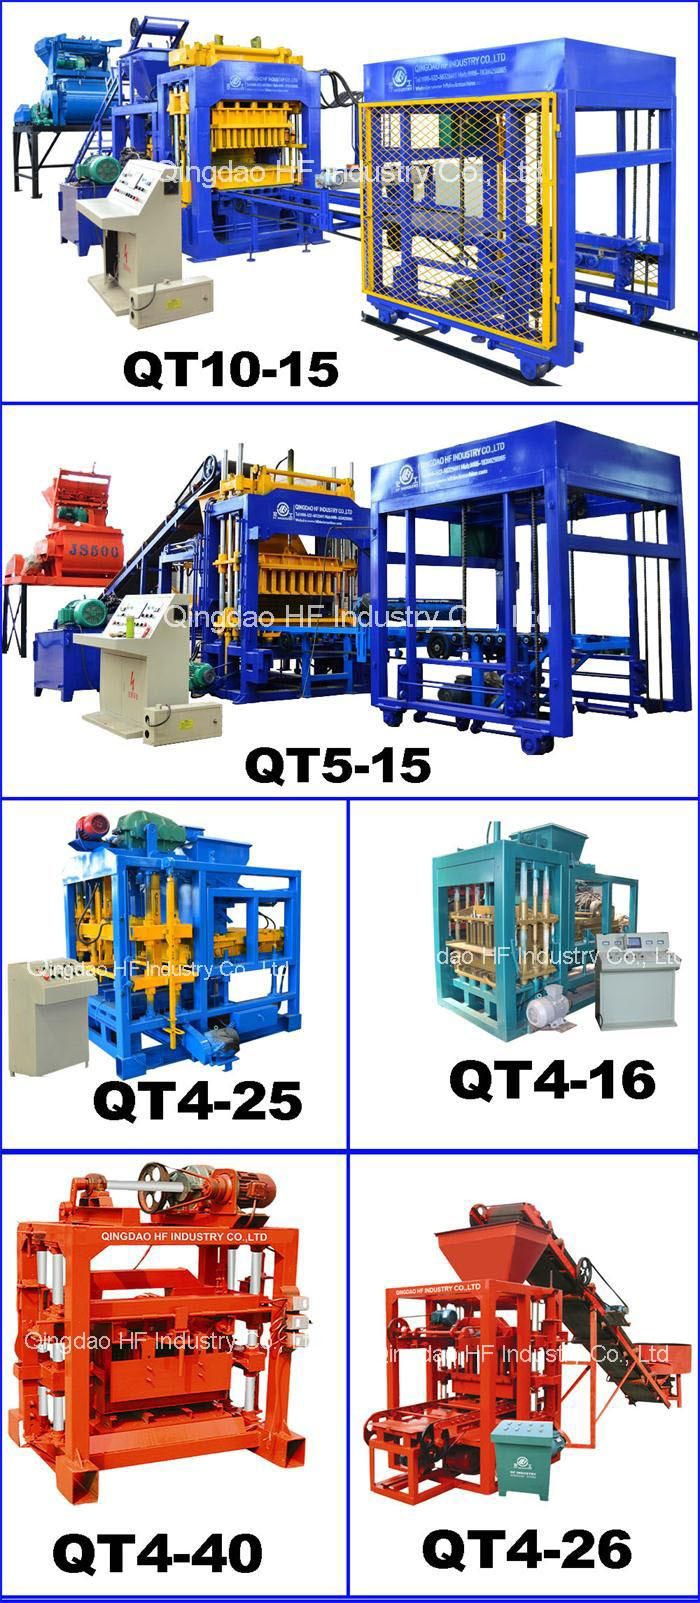 Hot Sale of Qt4-16 Hydraulic Cement Block Making Machine